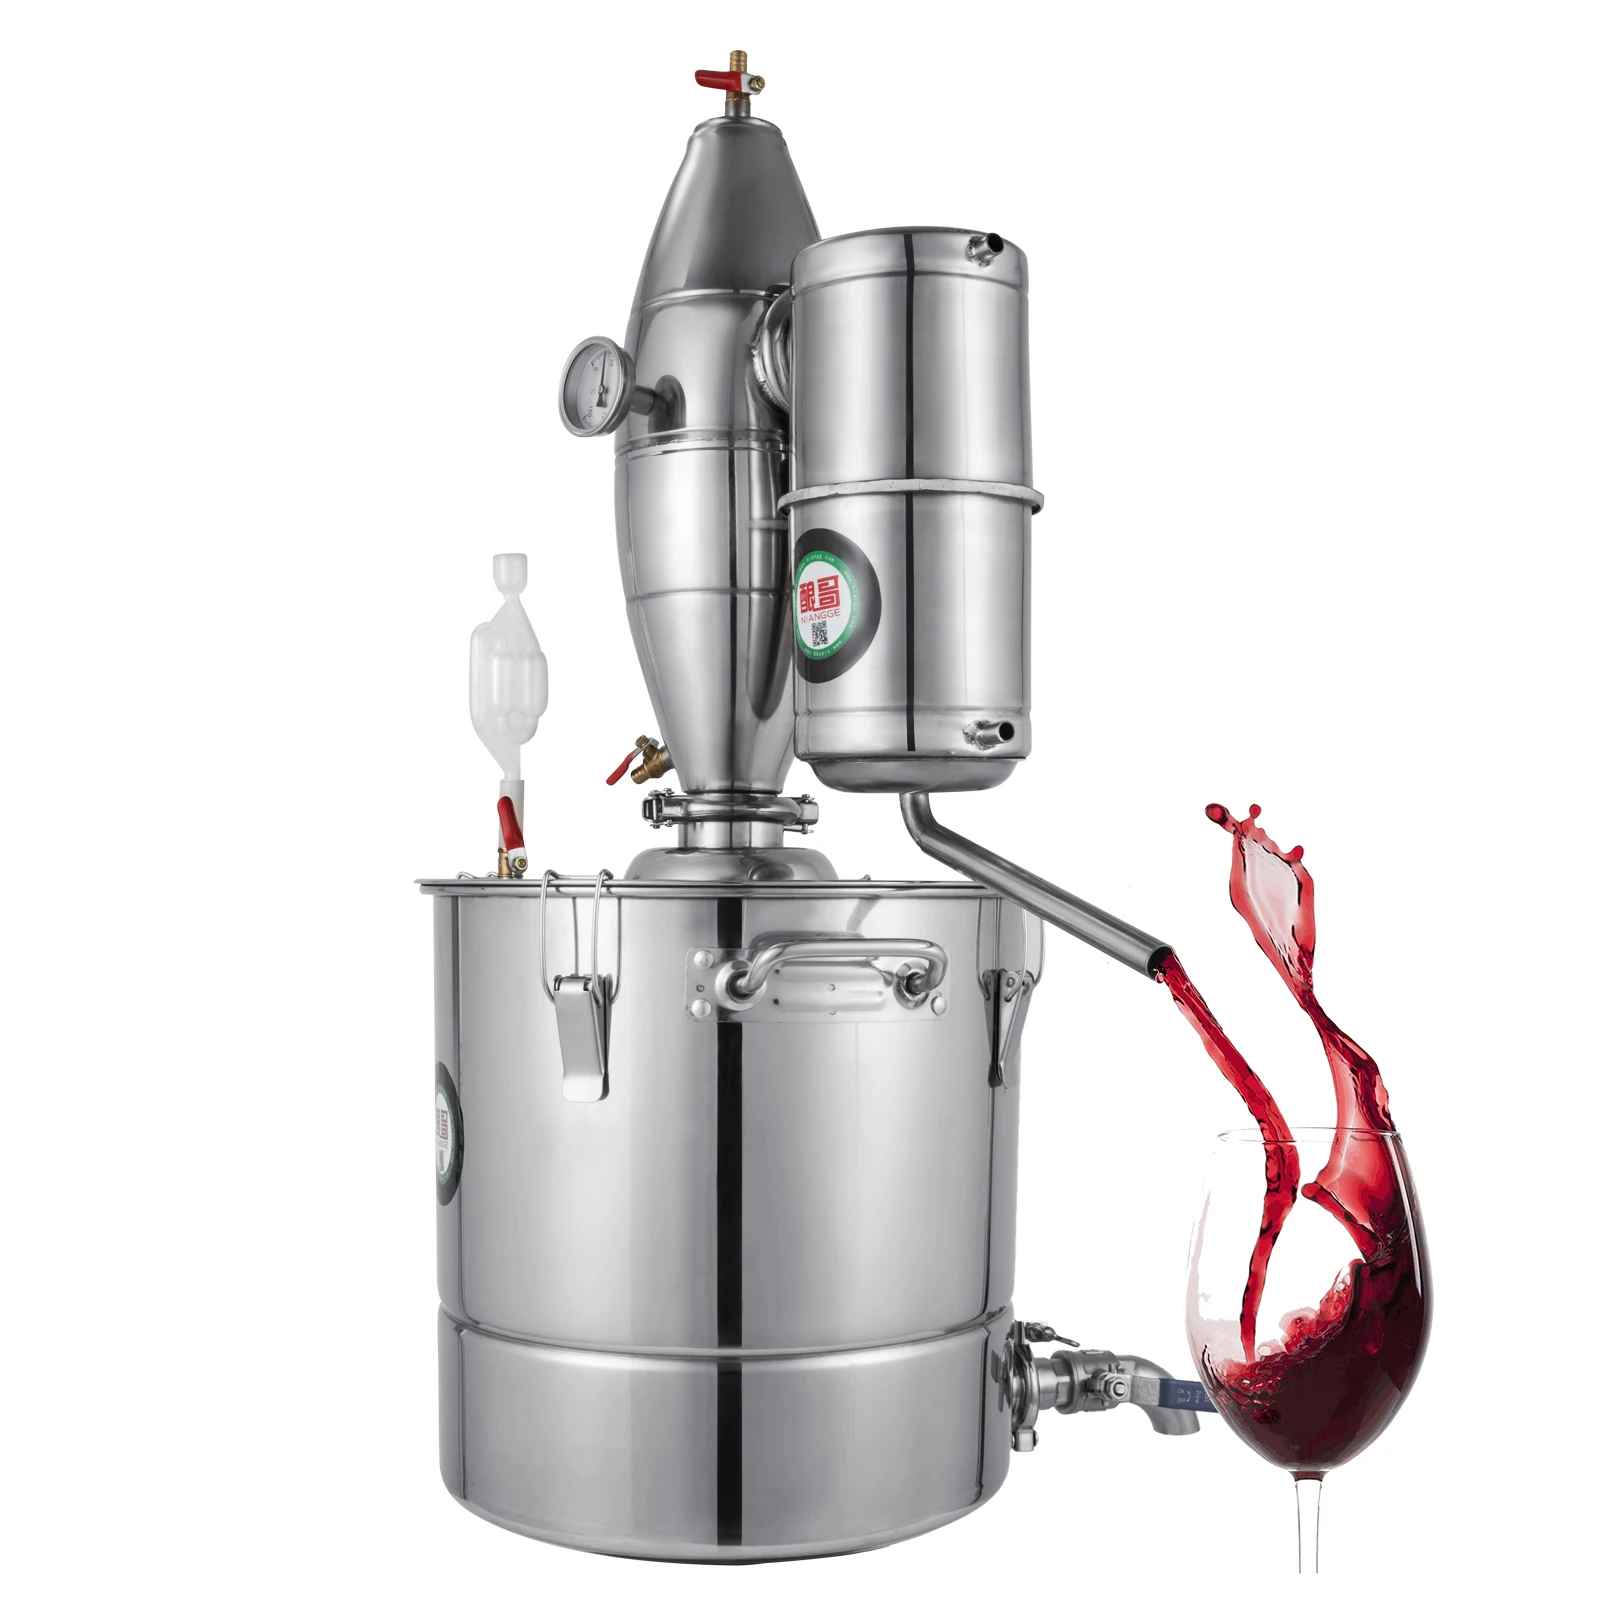 New Alcohol Stainless Still Distiller Home Brew Kit Moonshine Wine Making Boiler